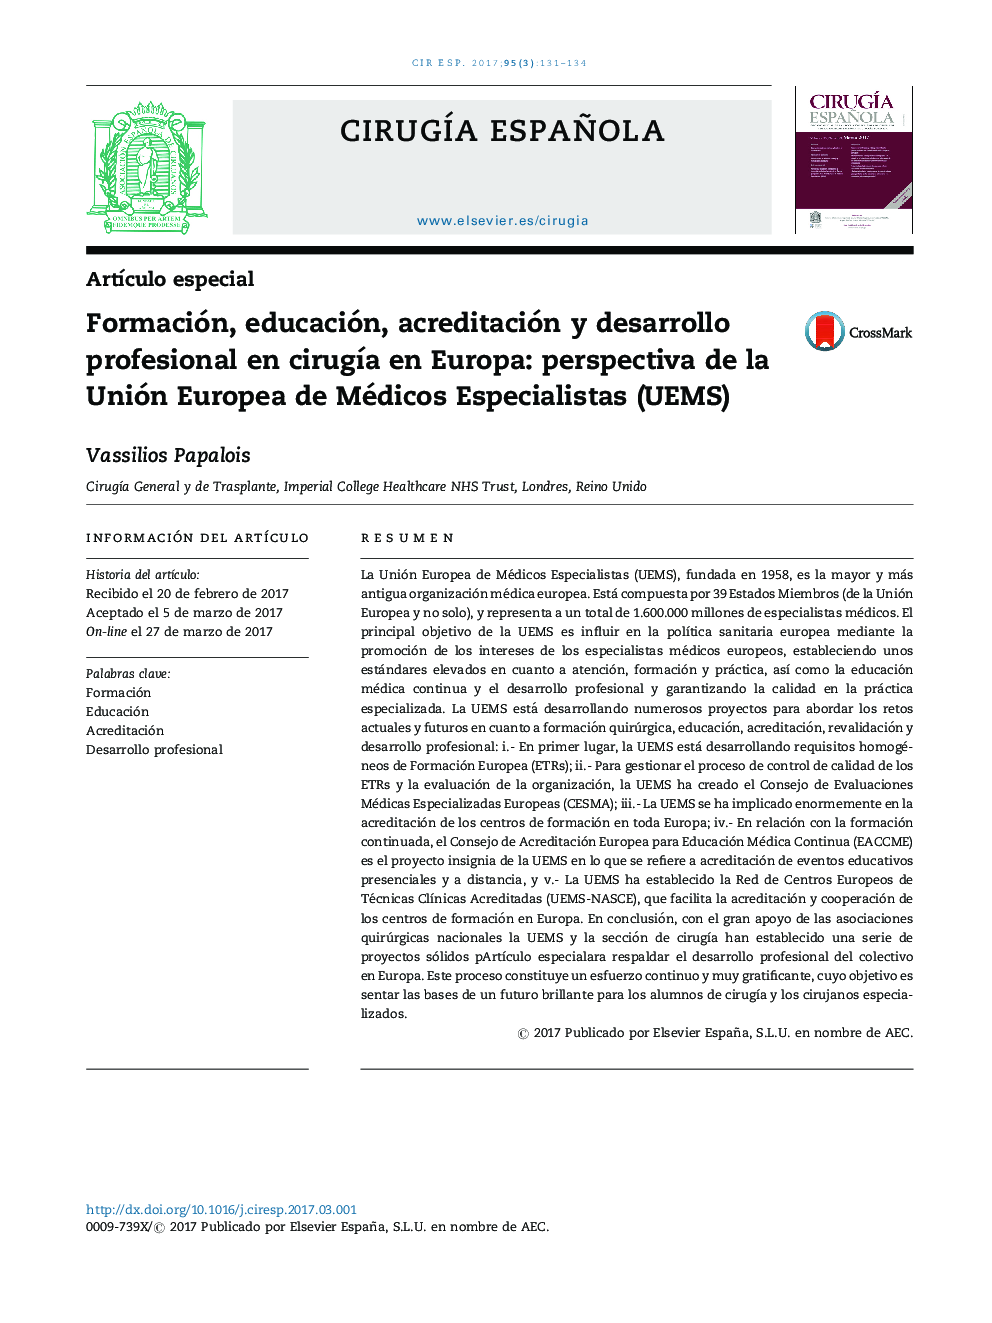 Formación, educación, acreditación y desarrollo profesional en cirugÃ­a en Europa: perspectiva de la Unión Europea de Médicos Especialistas (UEMS)